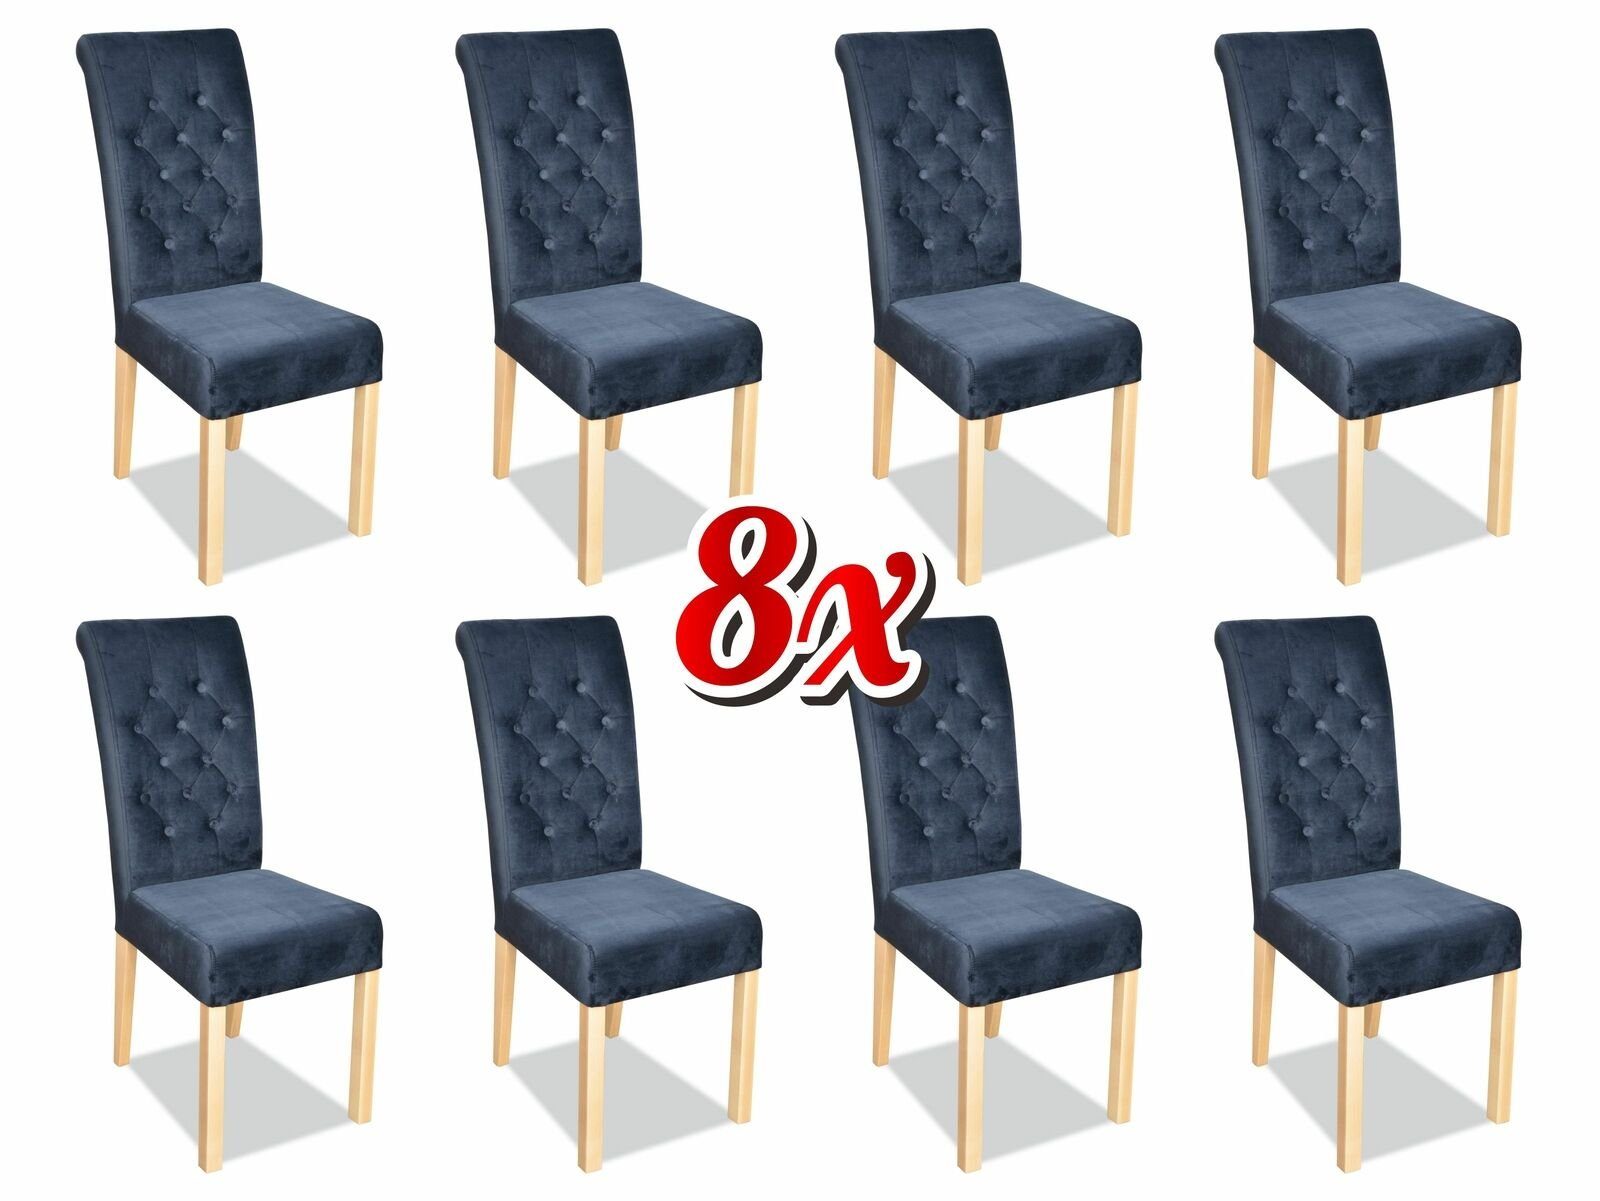 JVmoebel Stuhl, Chesterfield 8x Sessel Design Polster Stühle Stuhl Klassische Lehn Textil Holz Dunkelblau